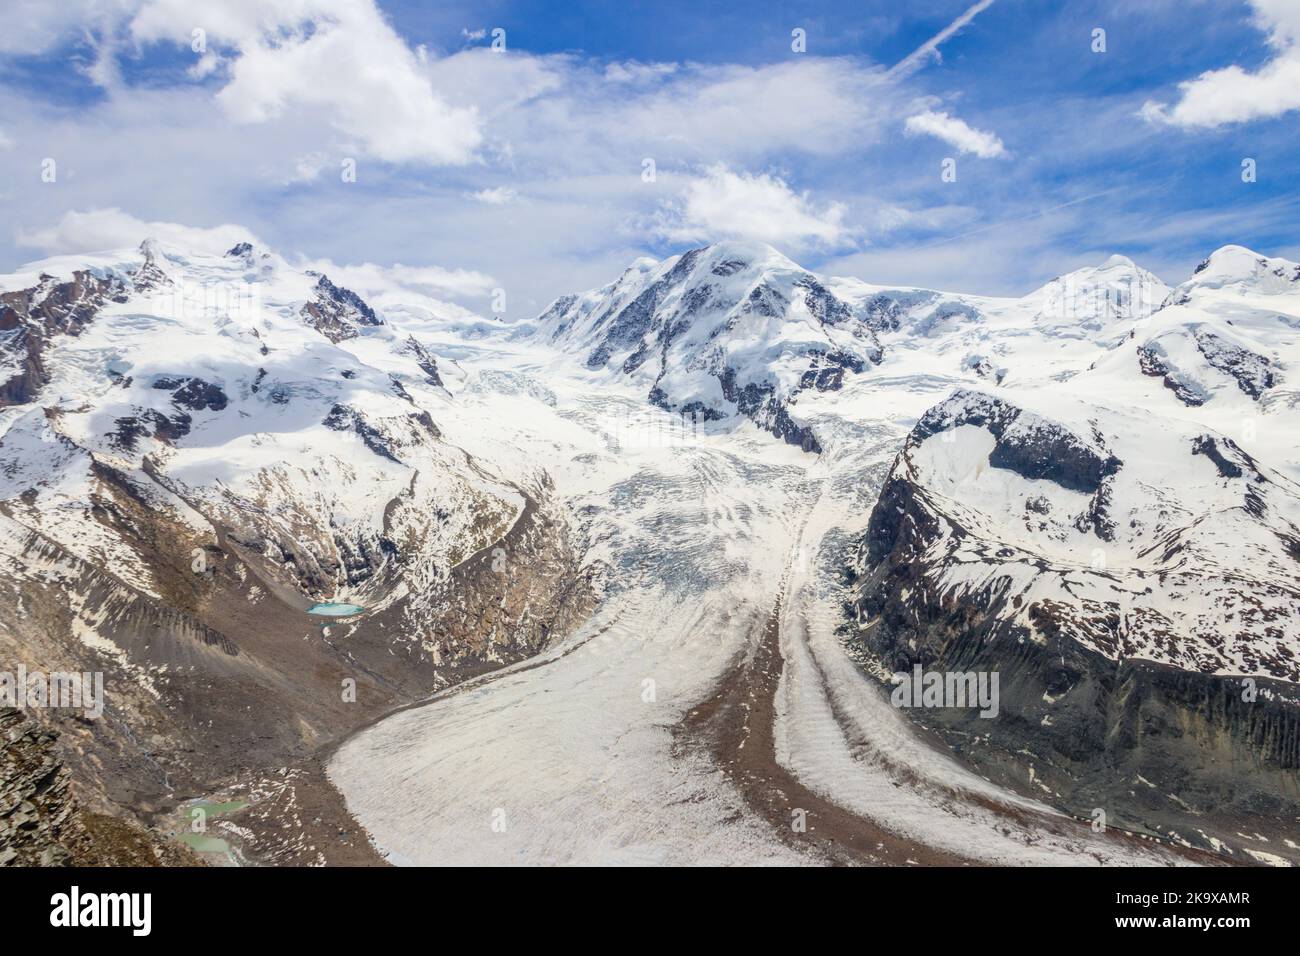 Magnifico panorama delle Alpi Pennine con il famoso Ghiacciaio Gorner e le imponenti montagne innevate del Massiccio del Monte Rosa vicino a Zermatt, Svizzerola Foto Stock